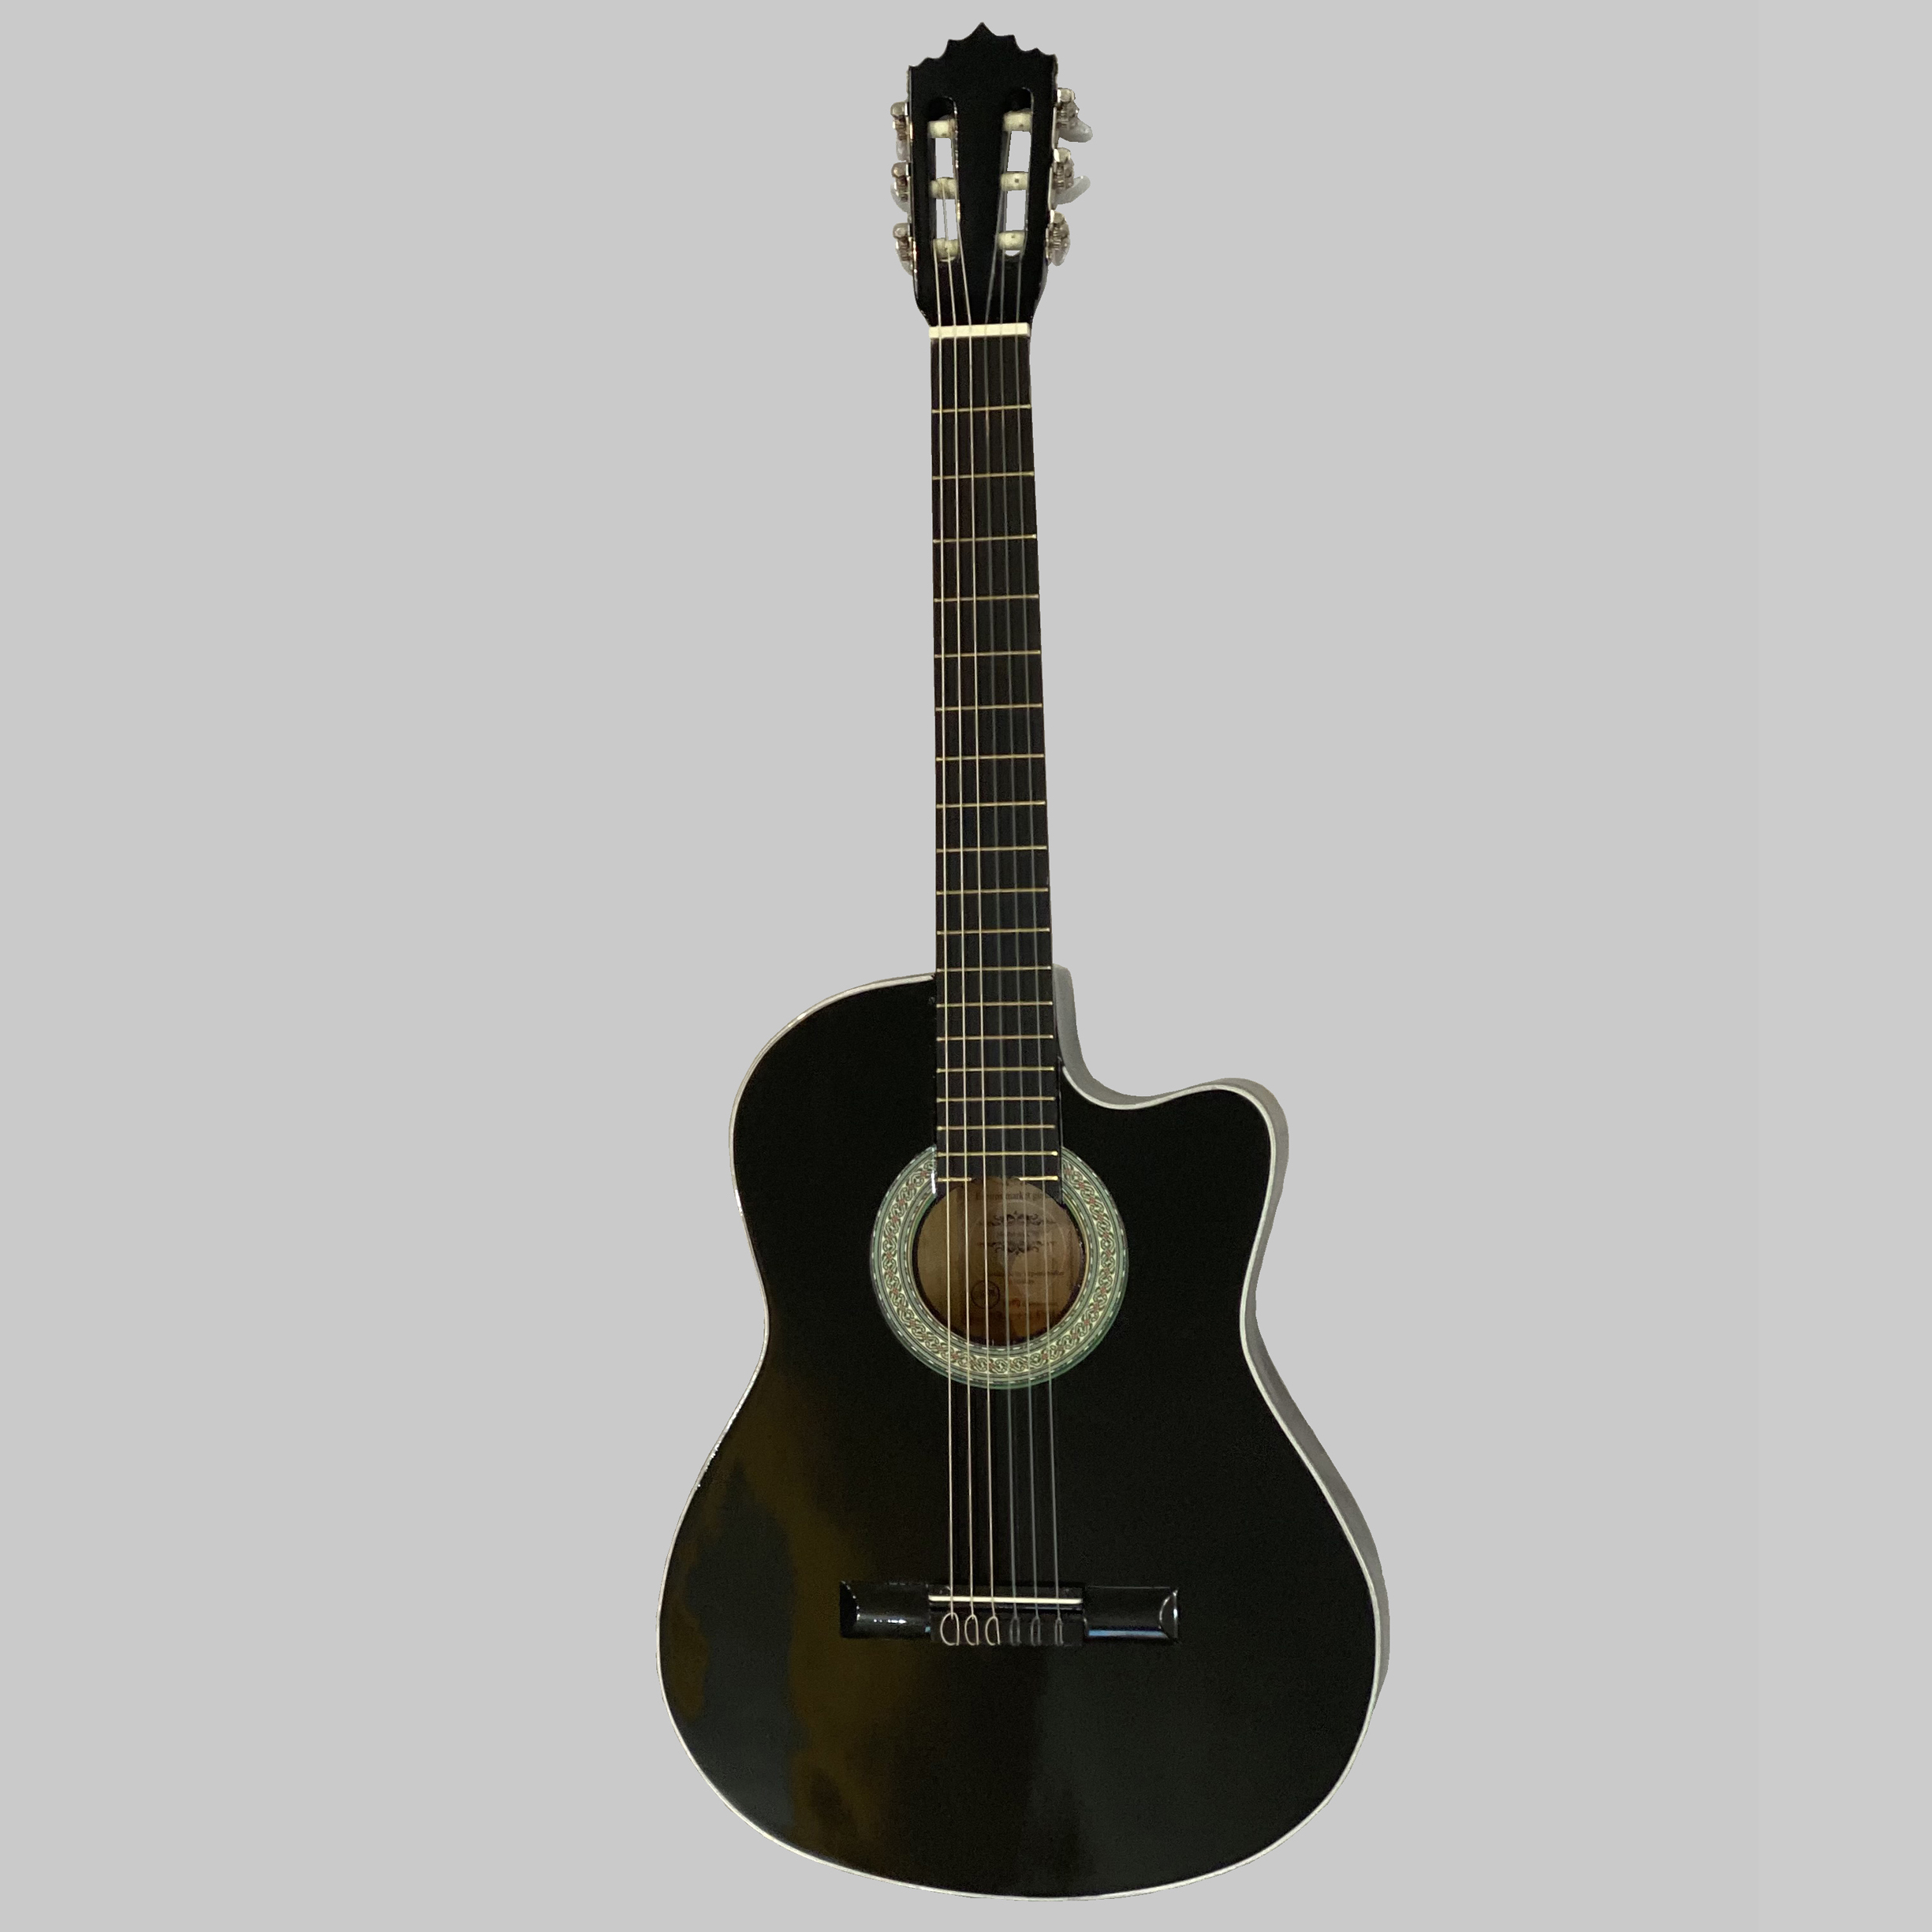 نکته خرید - قیمت روز گیتار پاپ اسپیروس مارکت مدل C70 خرید